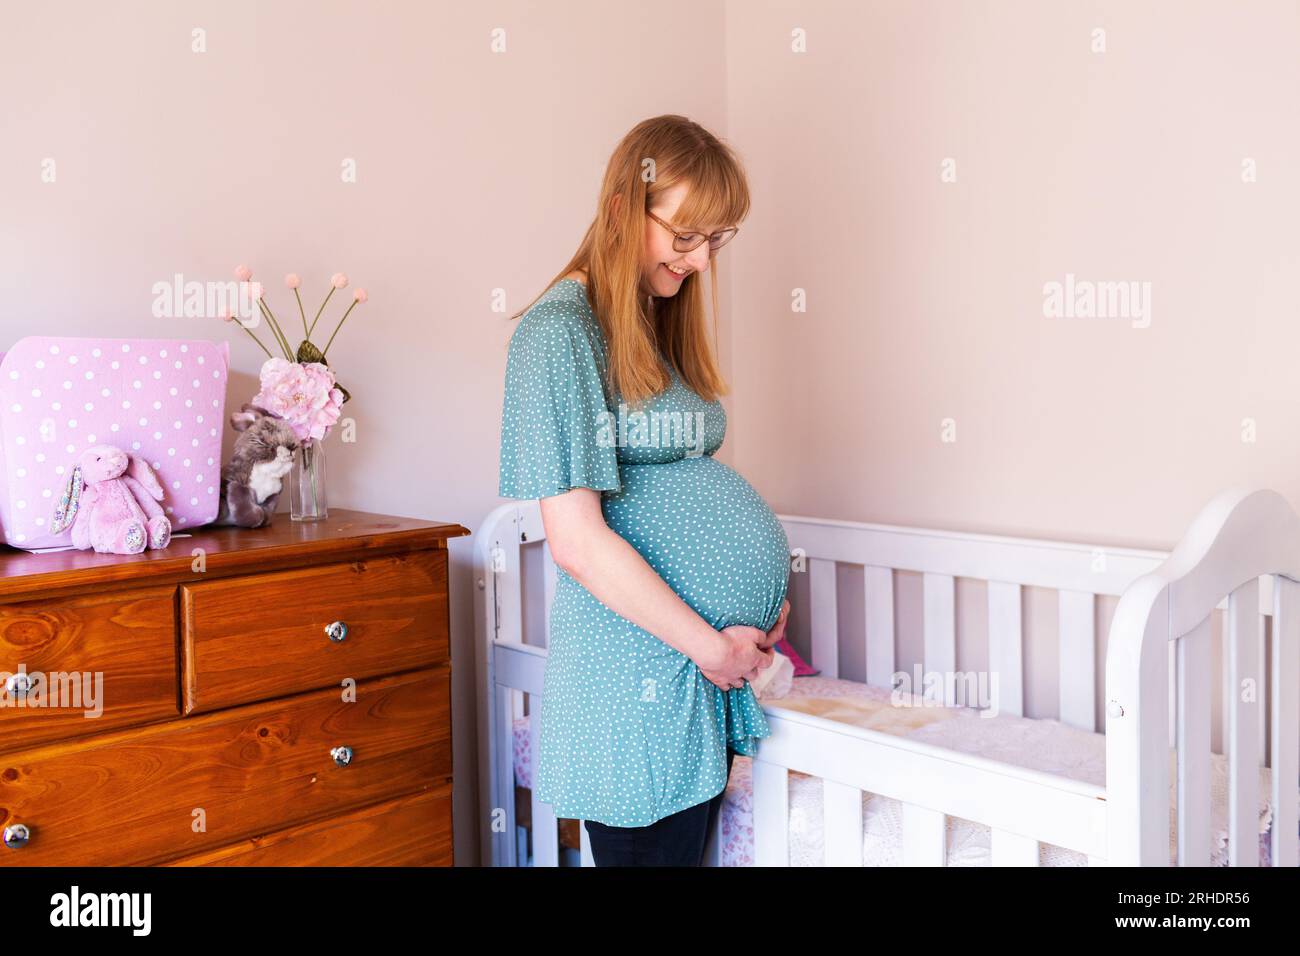 Jeune femme enceinte dans la vingtaine debout près d'un lit dans la crèche Banque D'Images